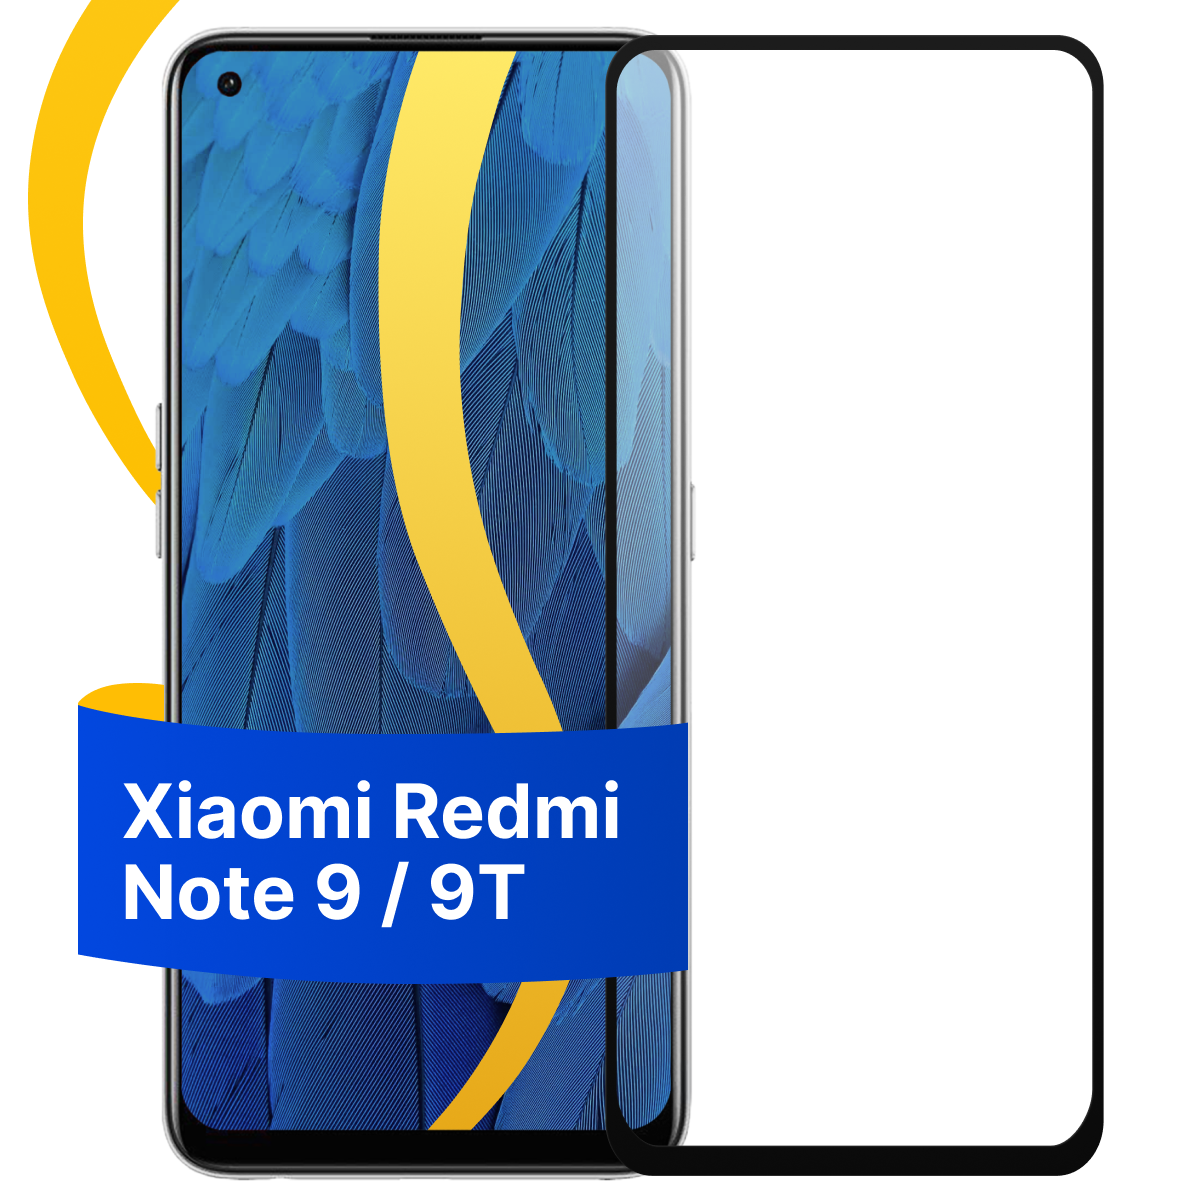 Глянцевое защитное стекло для телефона Xiaomi Redmi Note 9 и 9T / Противоударное стекло с олеофобным покрытием на смартфон Сяоми Редми Нот 9 и 9Т